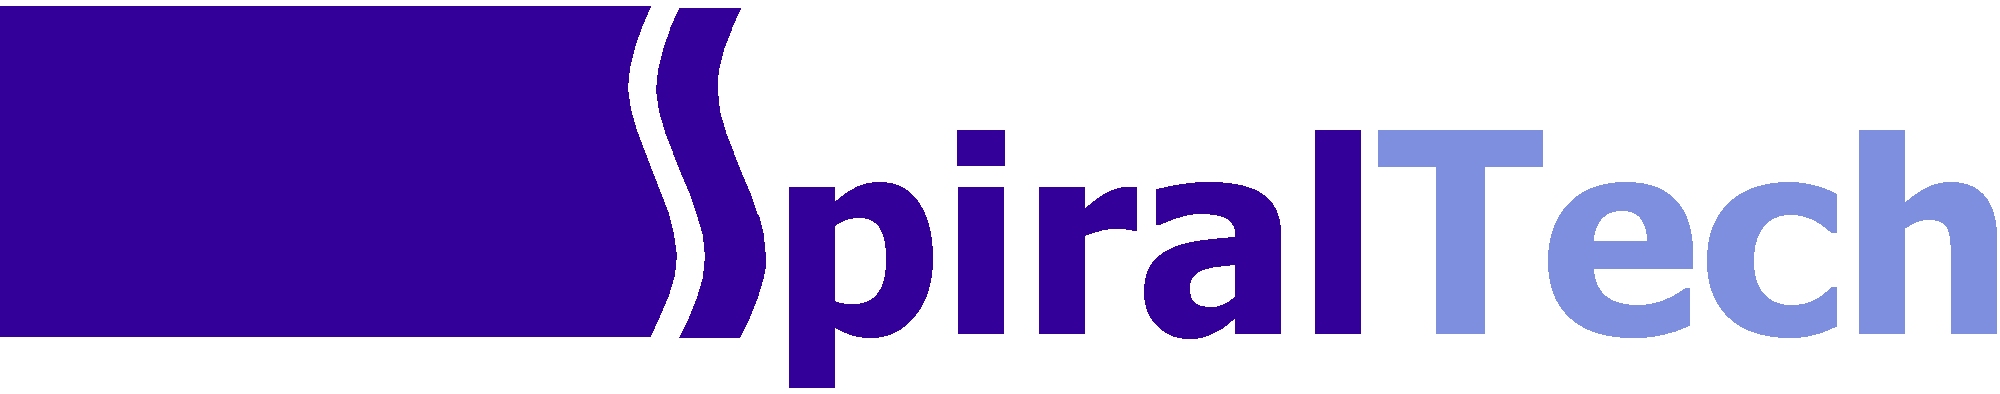 Spiraltech Ltd